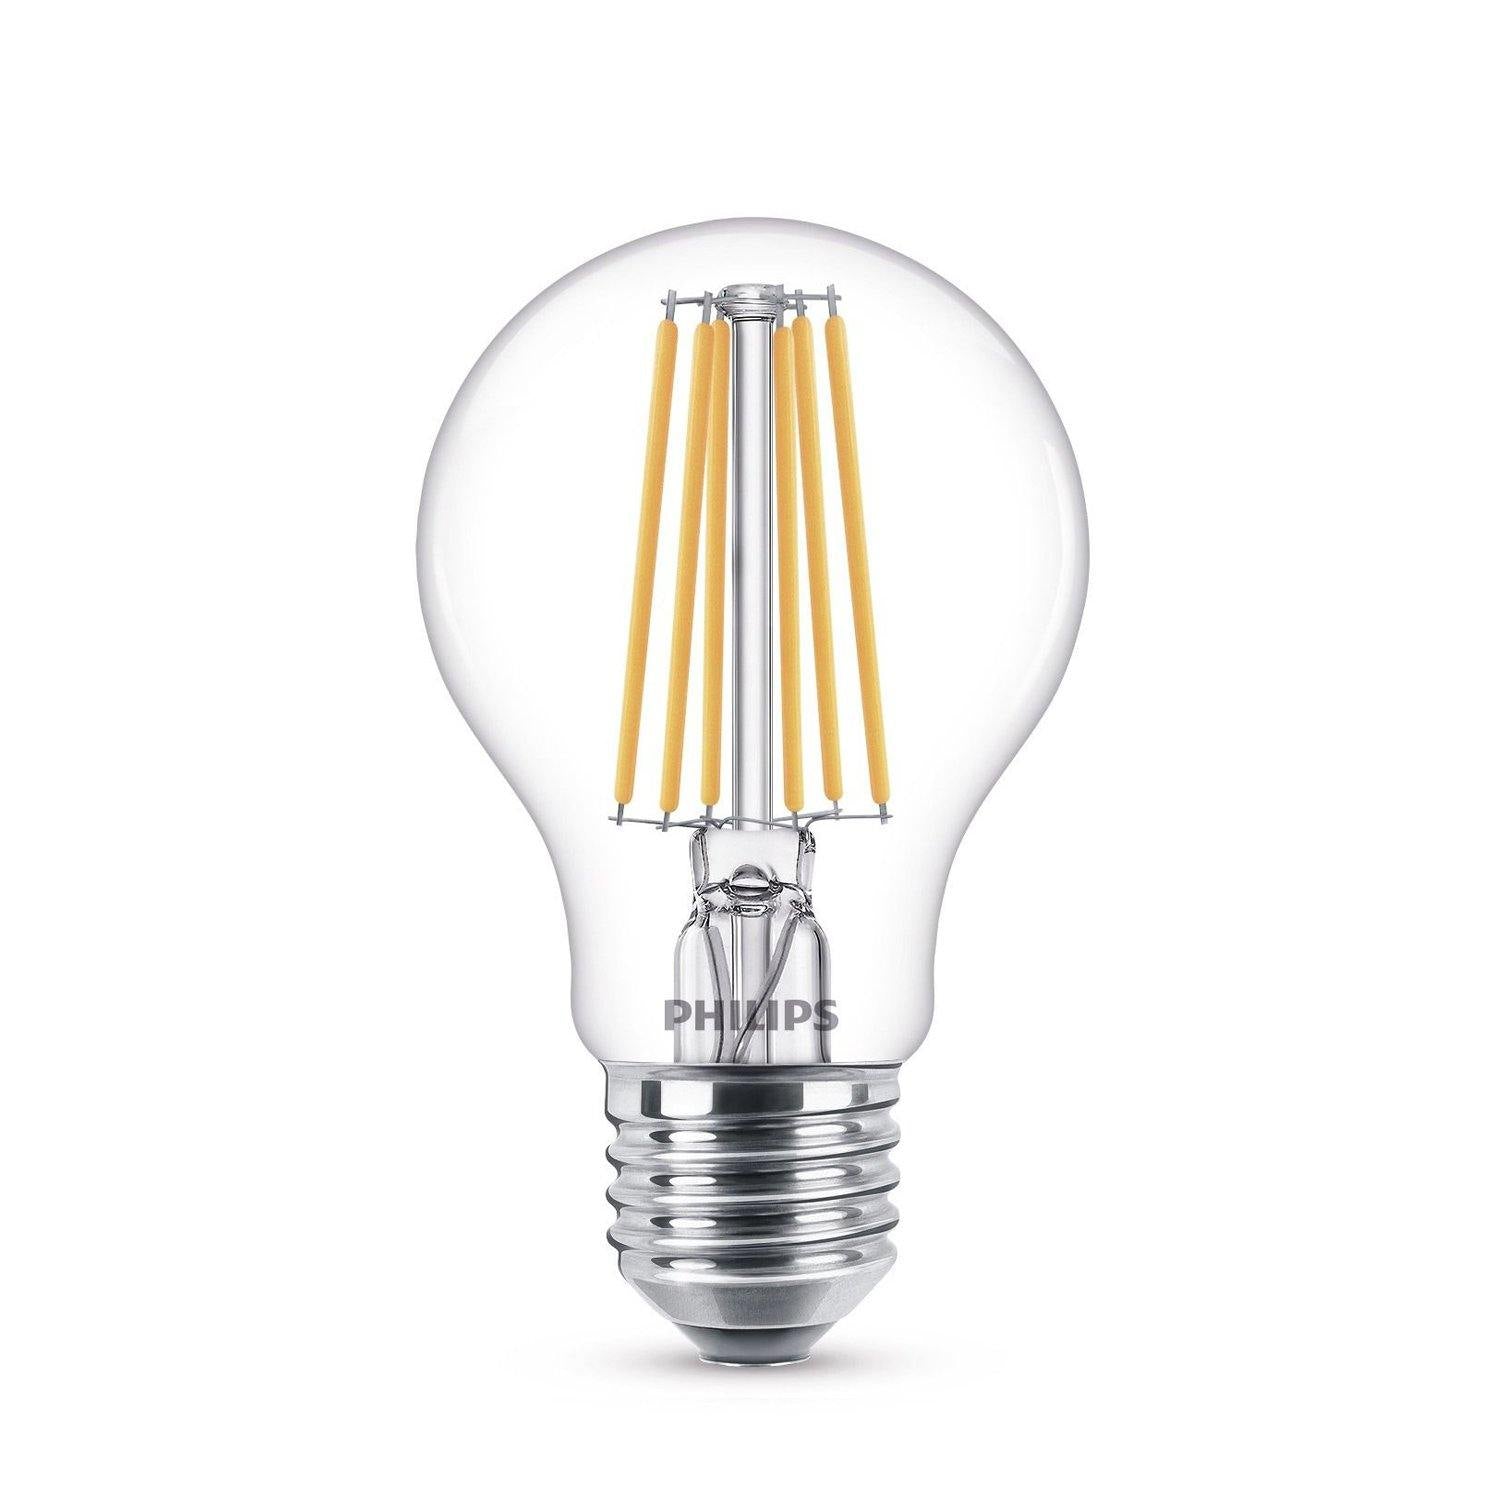 Bec LED Philips A60 E27 10.5W 1521 lumeni, cu filament pentru veioze, lampadare, lustre si corpuri de iluminat